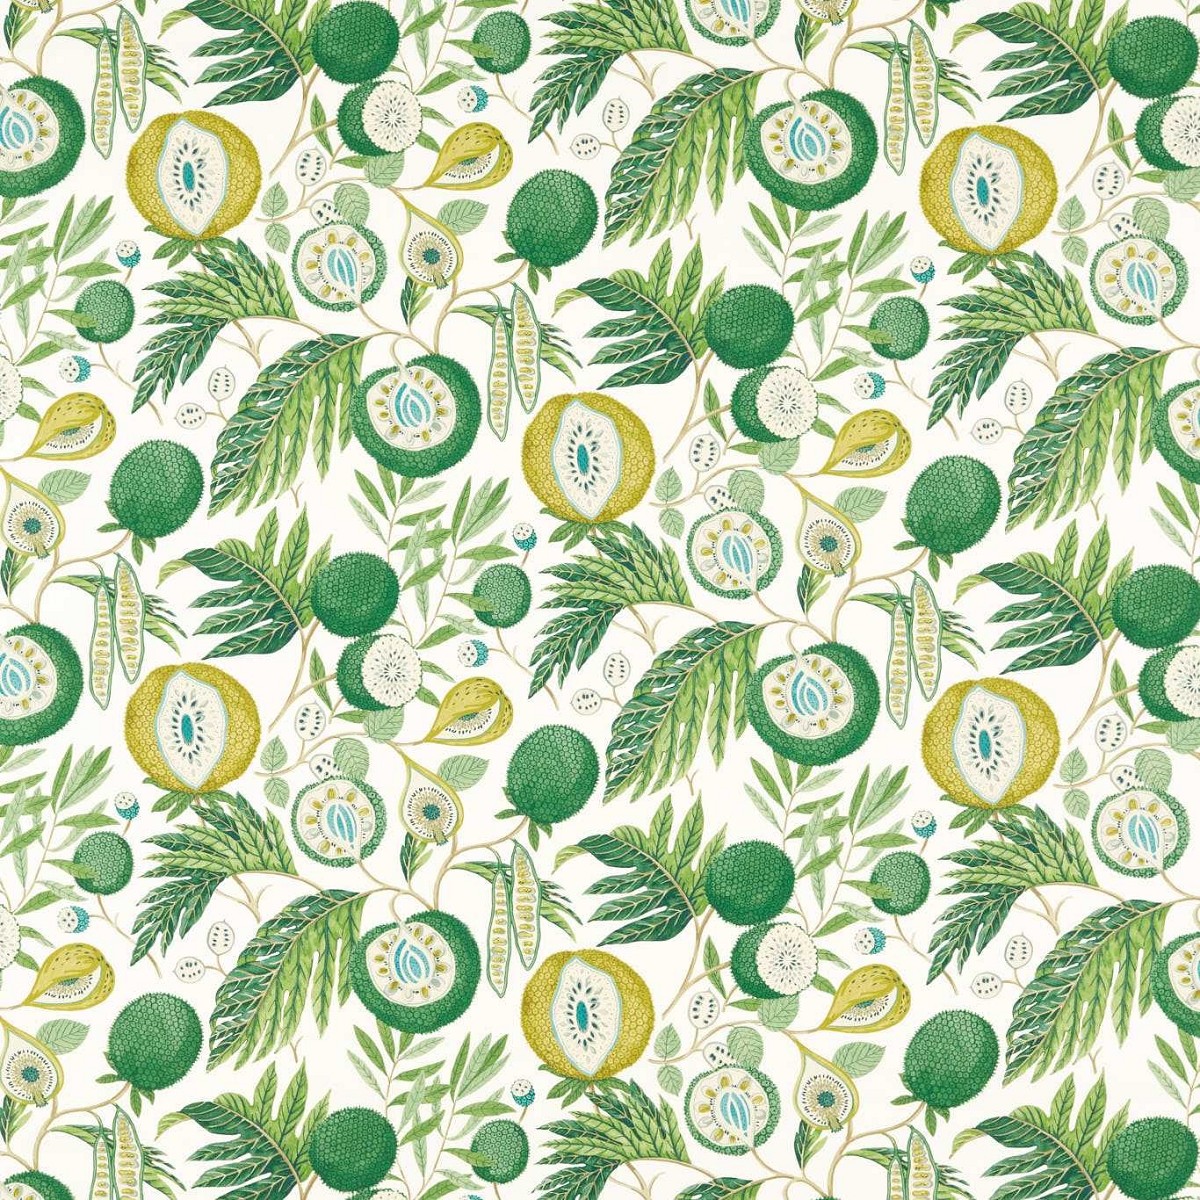 Jackfruit Botanical Green Indoor Outdoor Fabric by Sanderson